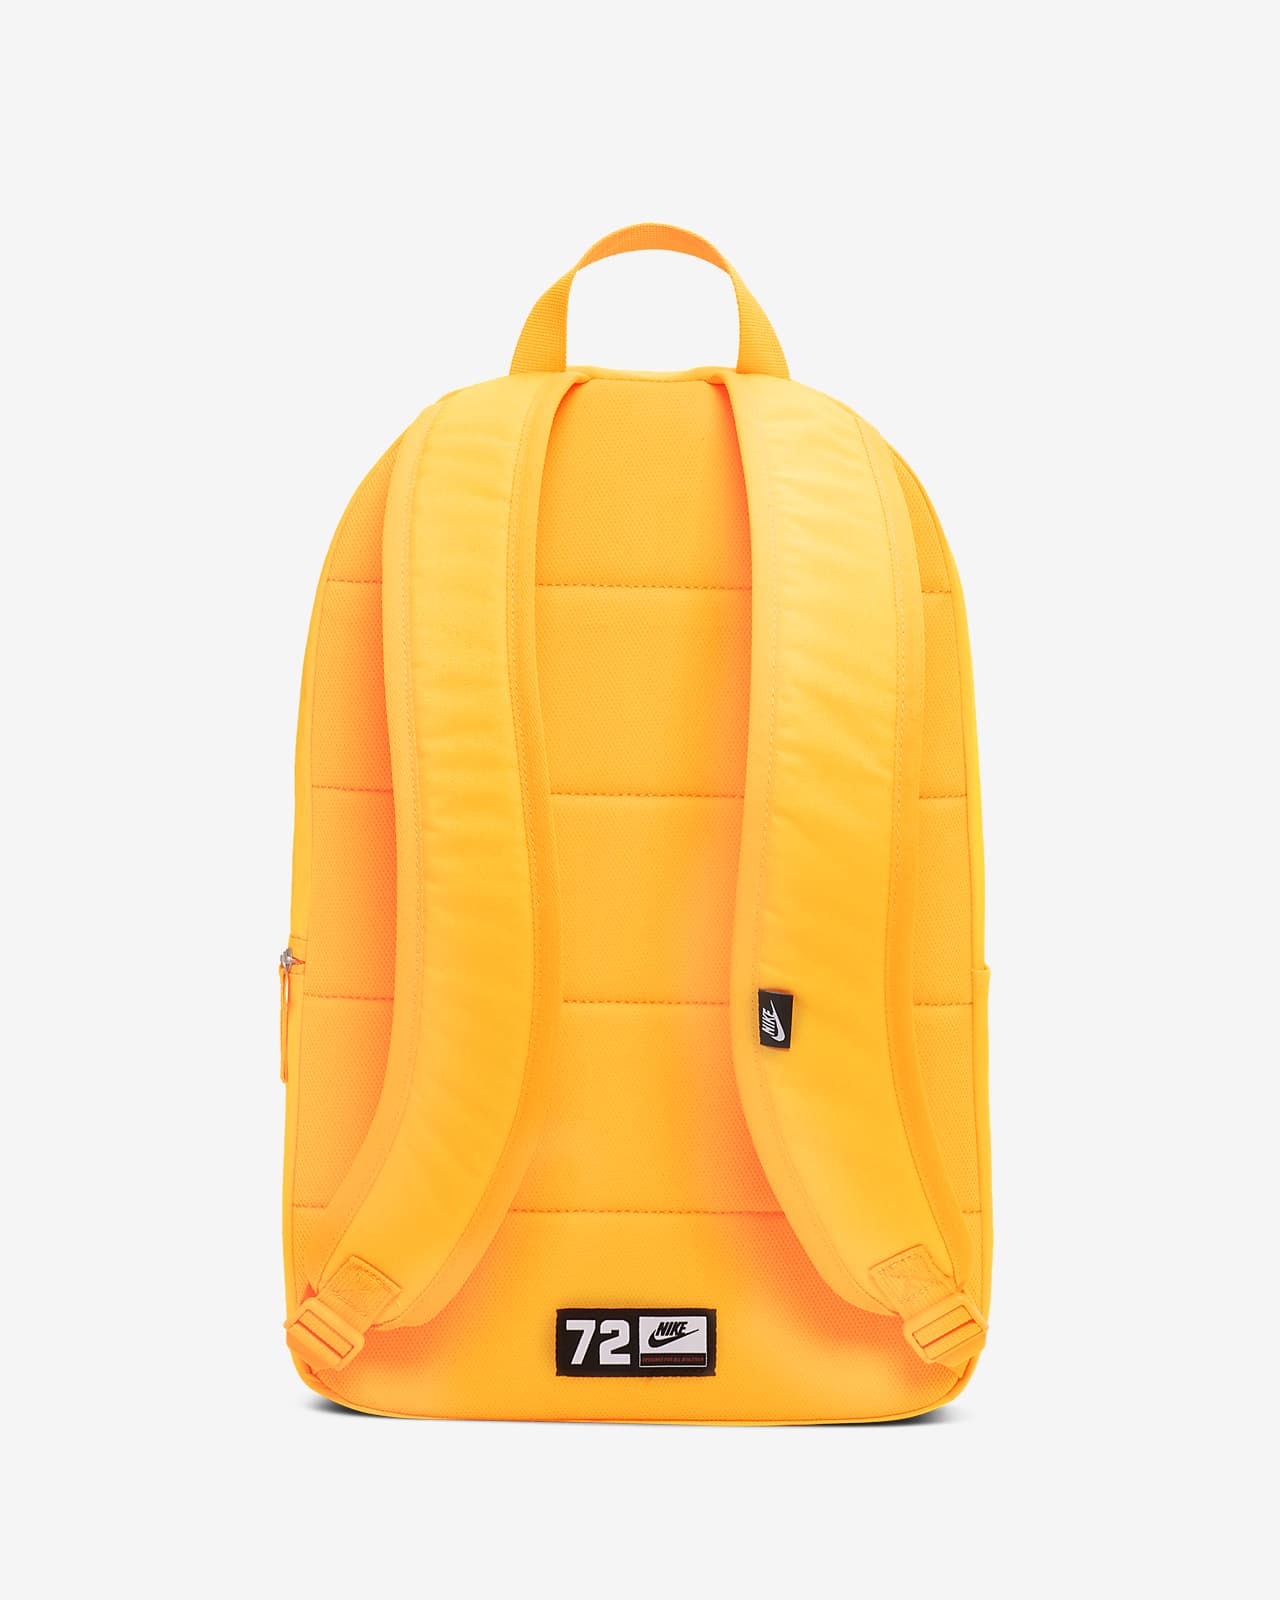 nike orange backpack